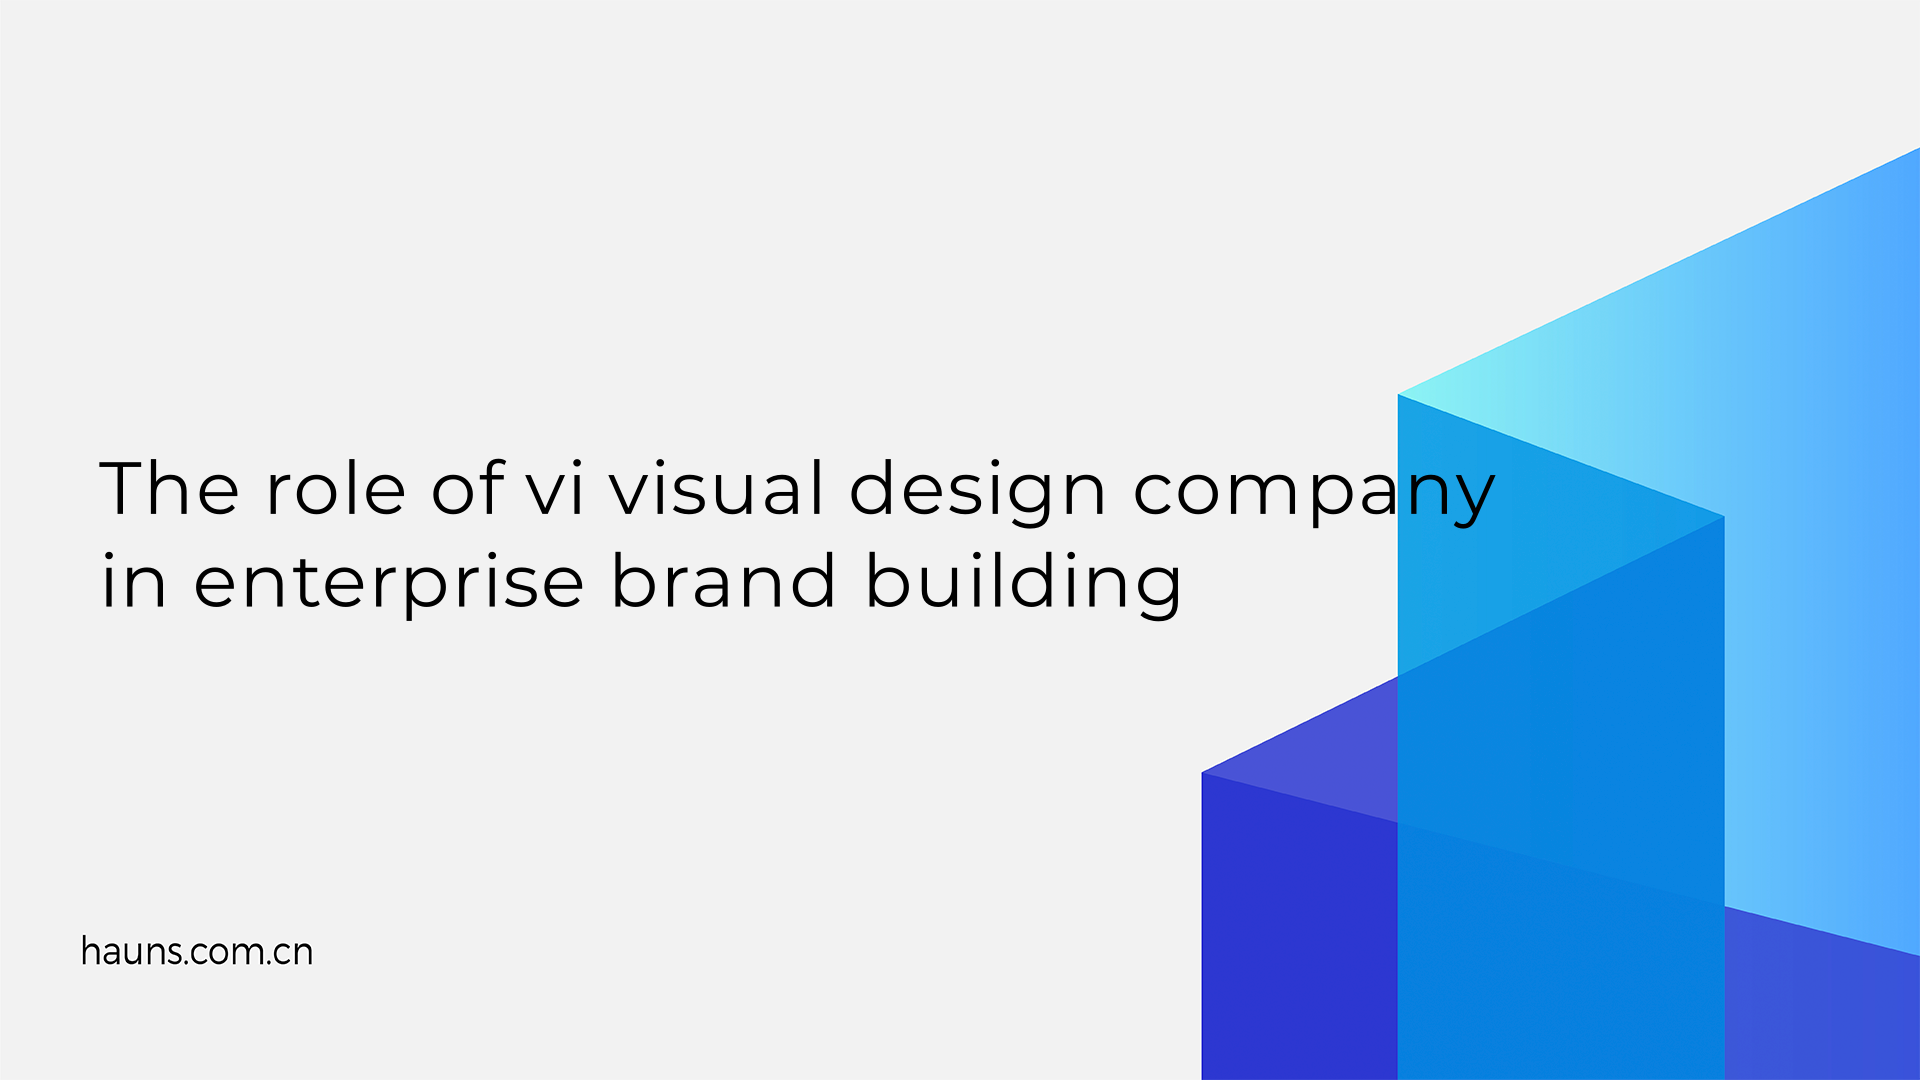 The role of vi visual design company in enterprise brand building